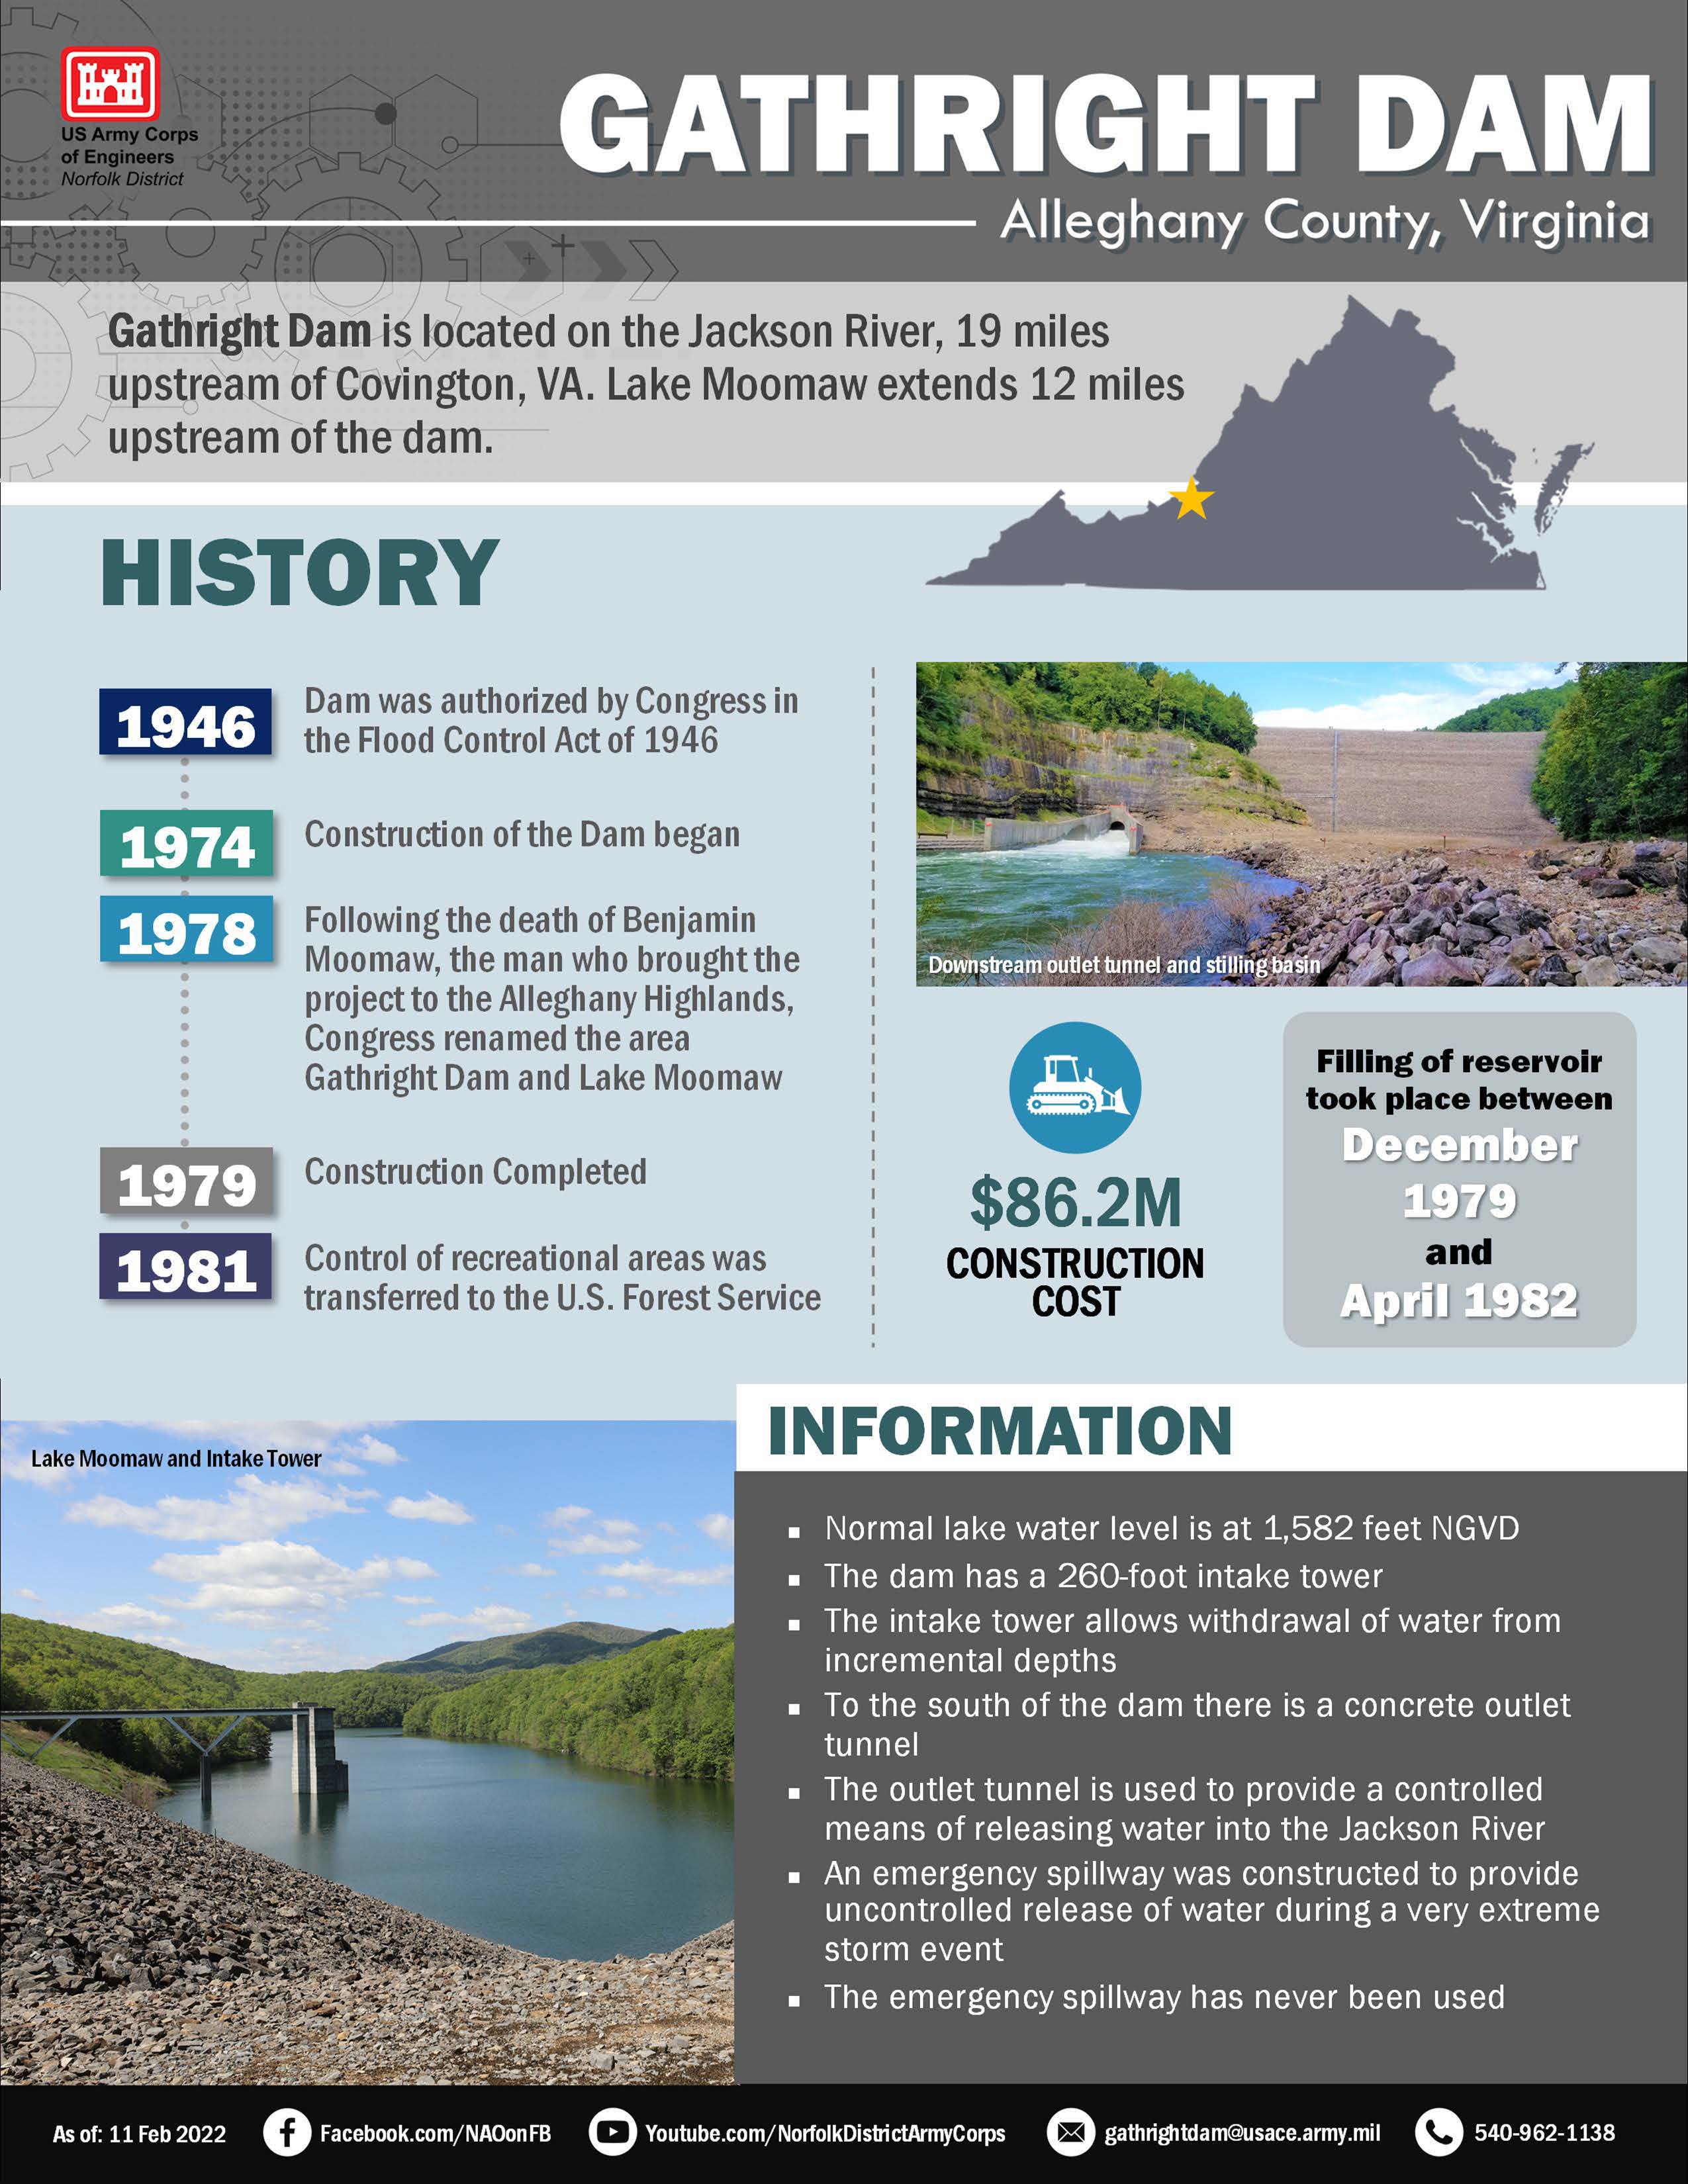 Image explaining water management at Gathright Dam